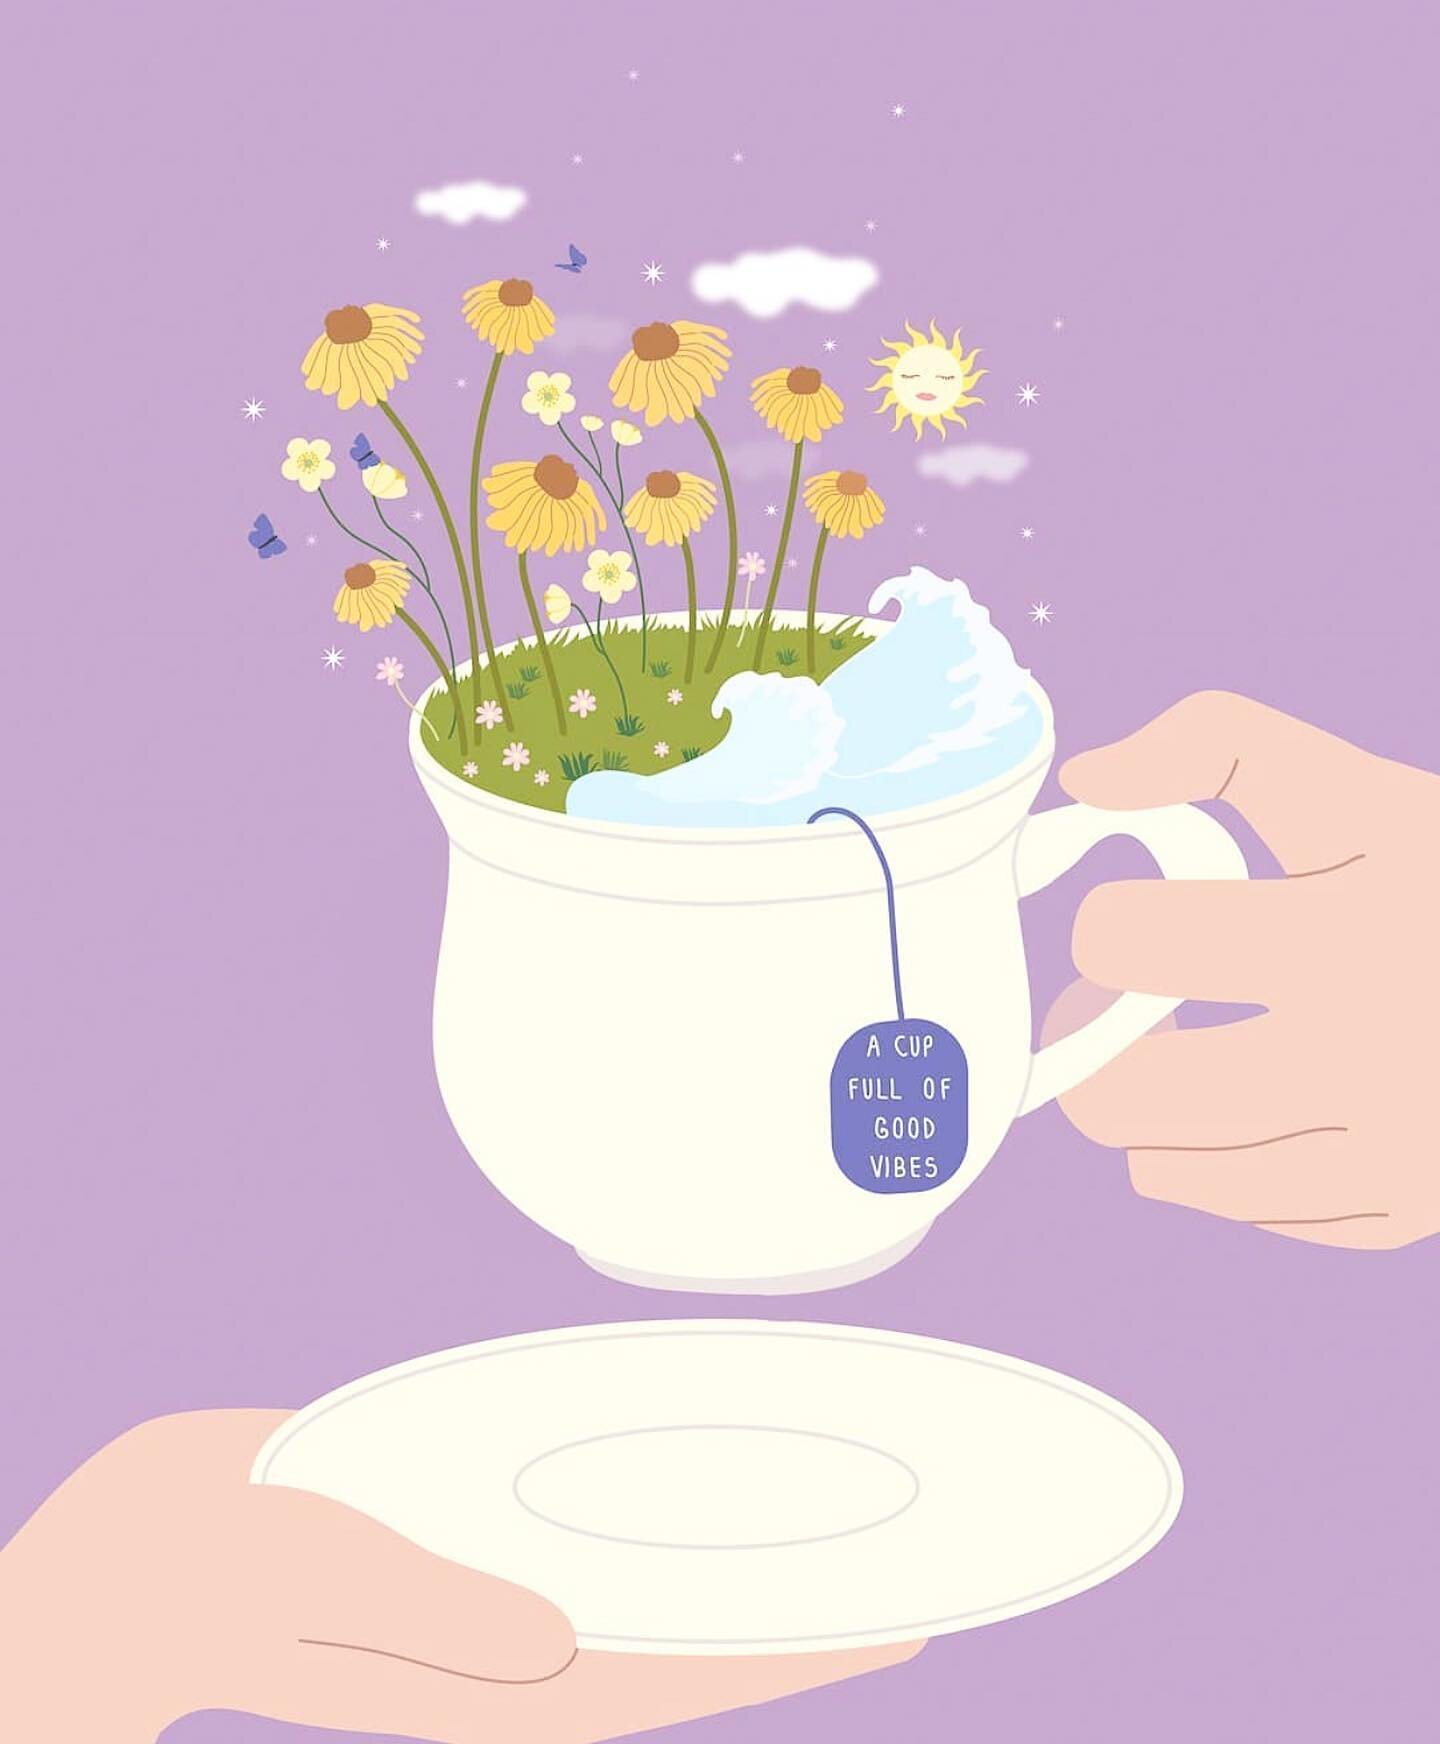 Dimanche ensoleill&eacute;, fleuri et qui commence par une jolie tasse de th&eacute; ❤️
@katarina_samohin 
#sundayautouquet #letouquet #bonnehumeur